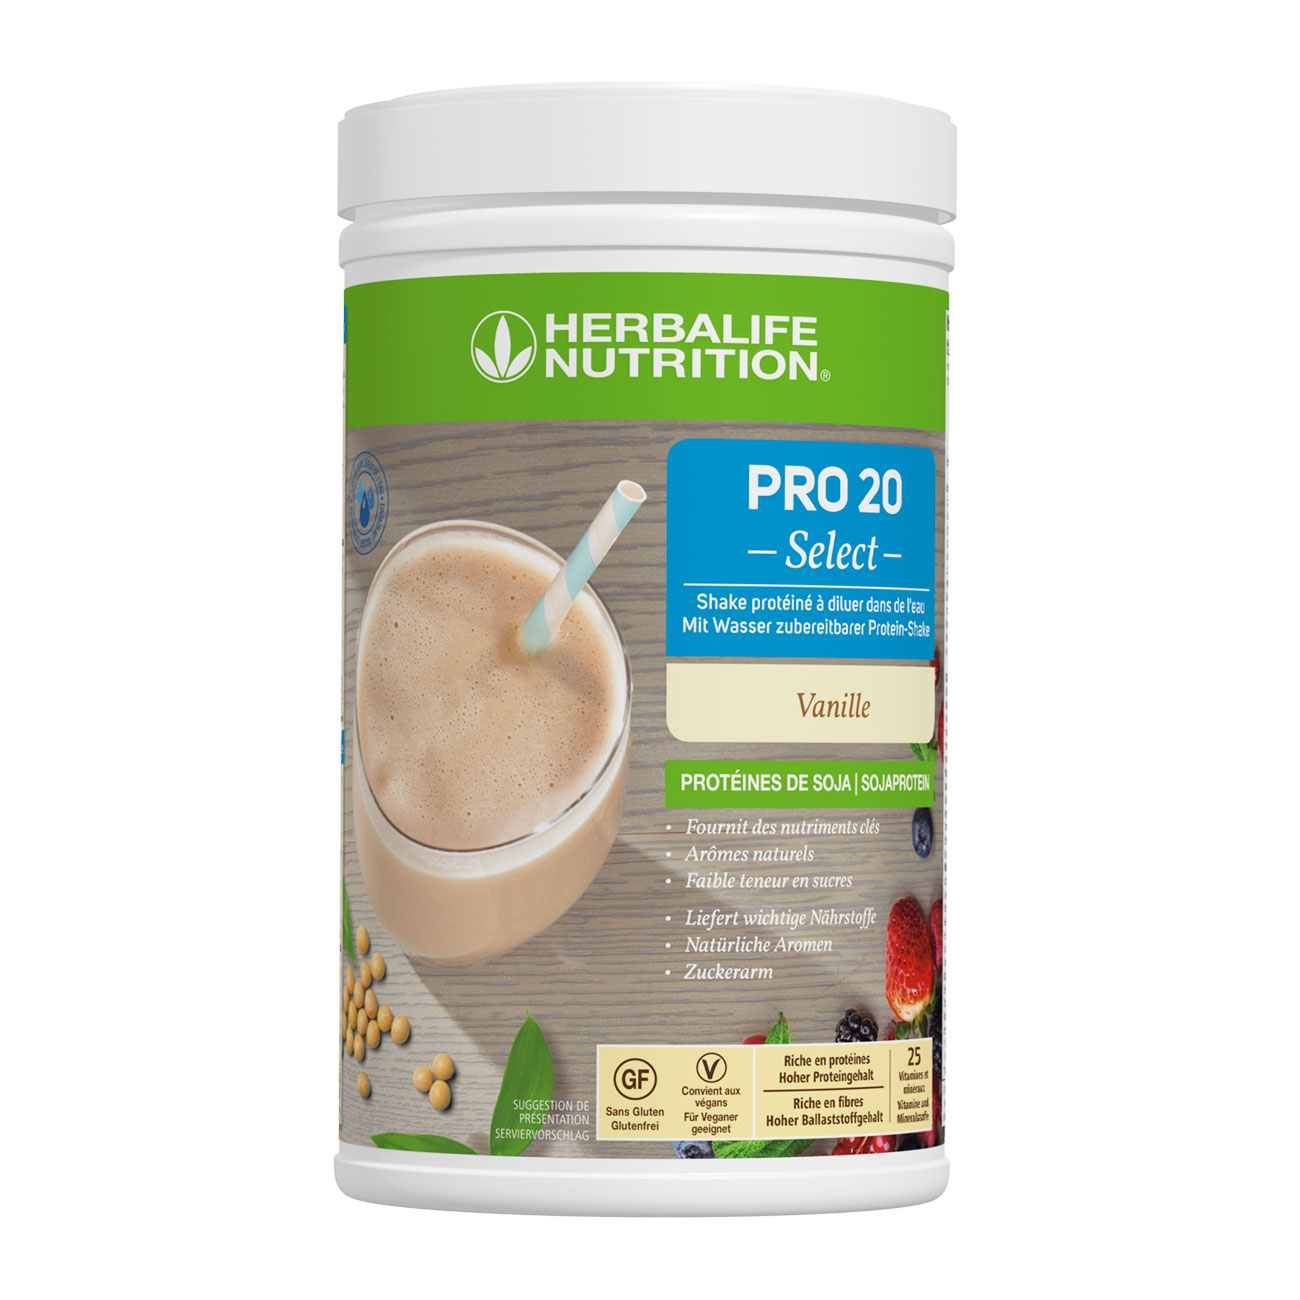 PRO 20 Select - Encas proteine saveur vanille, sans gluten et sans lactose